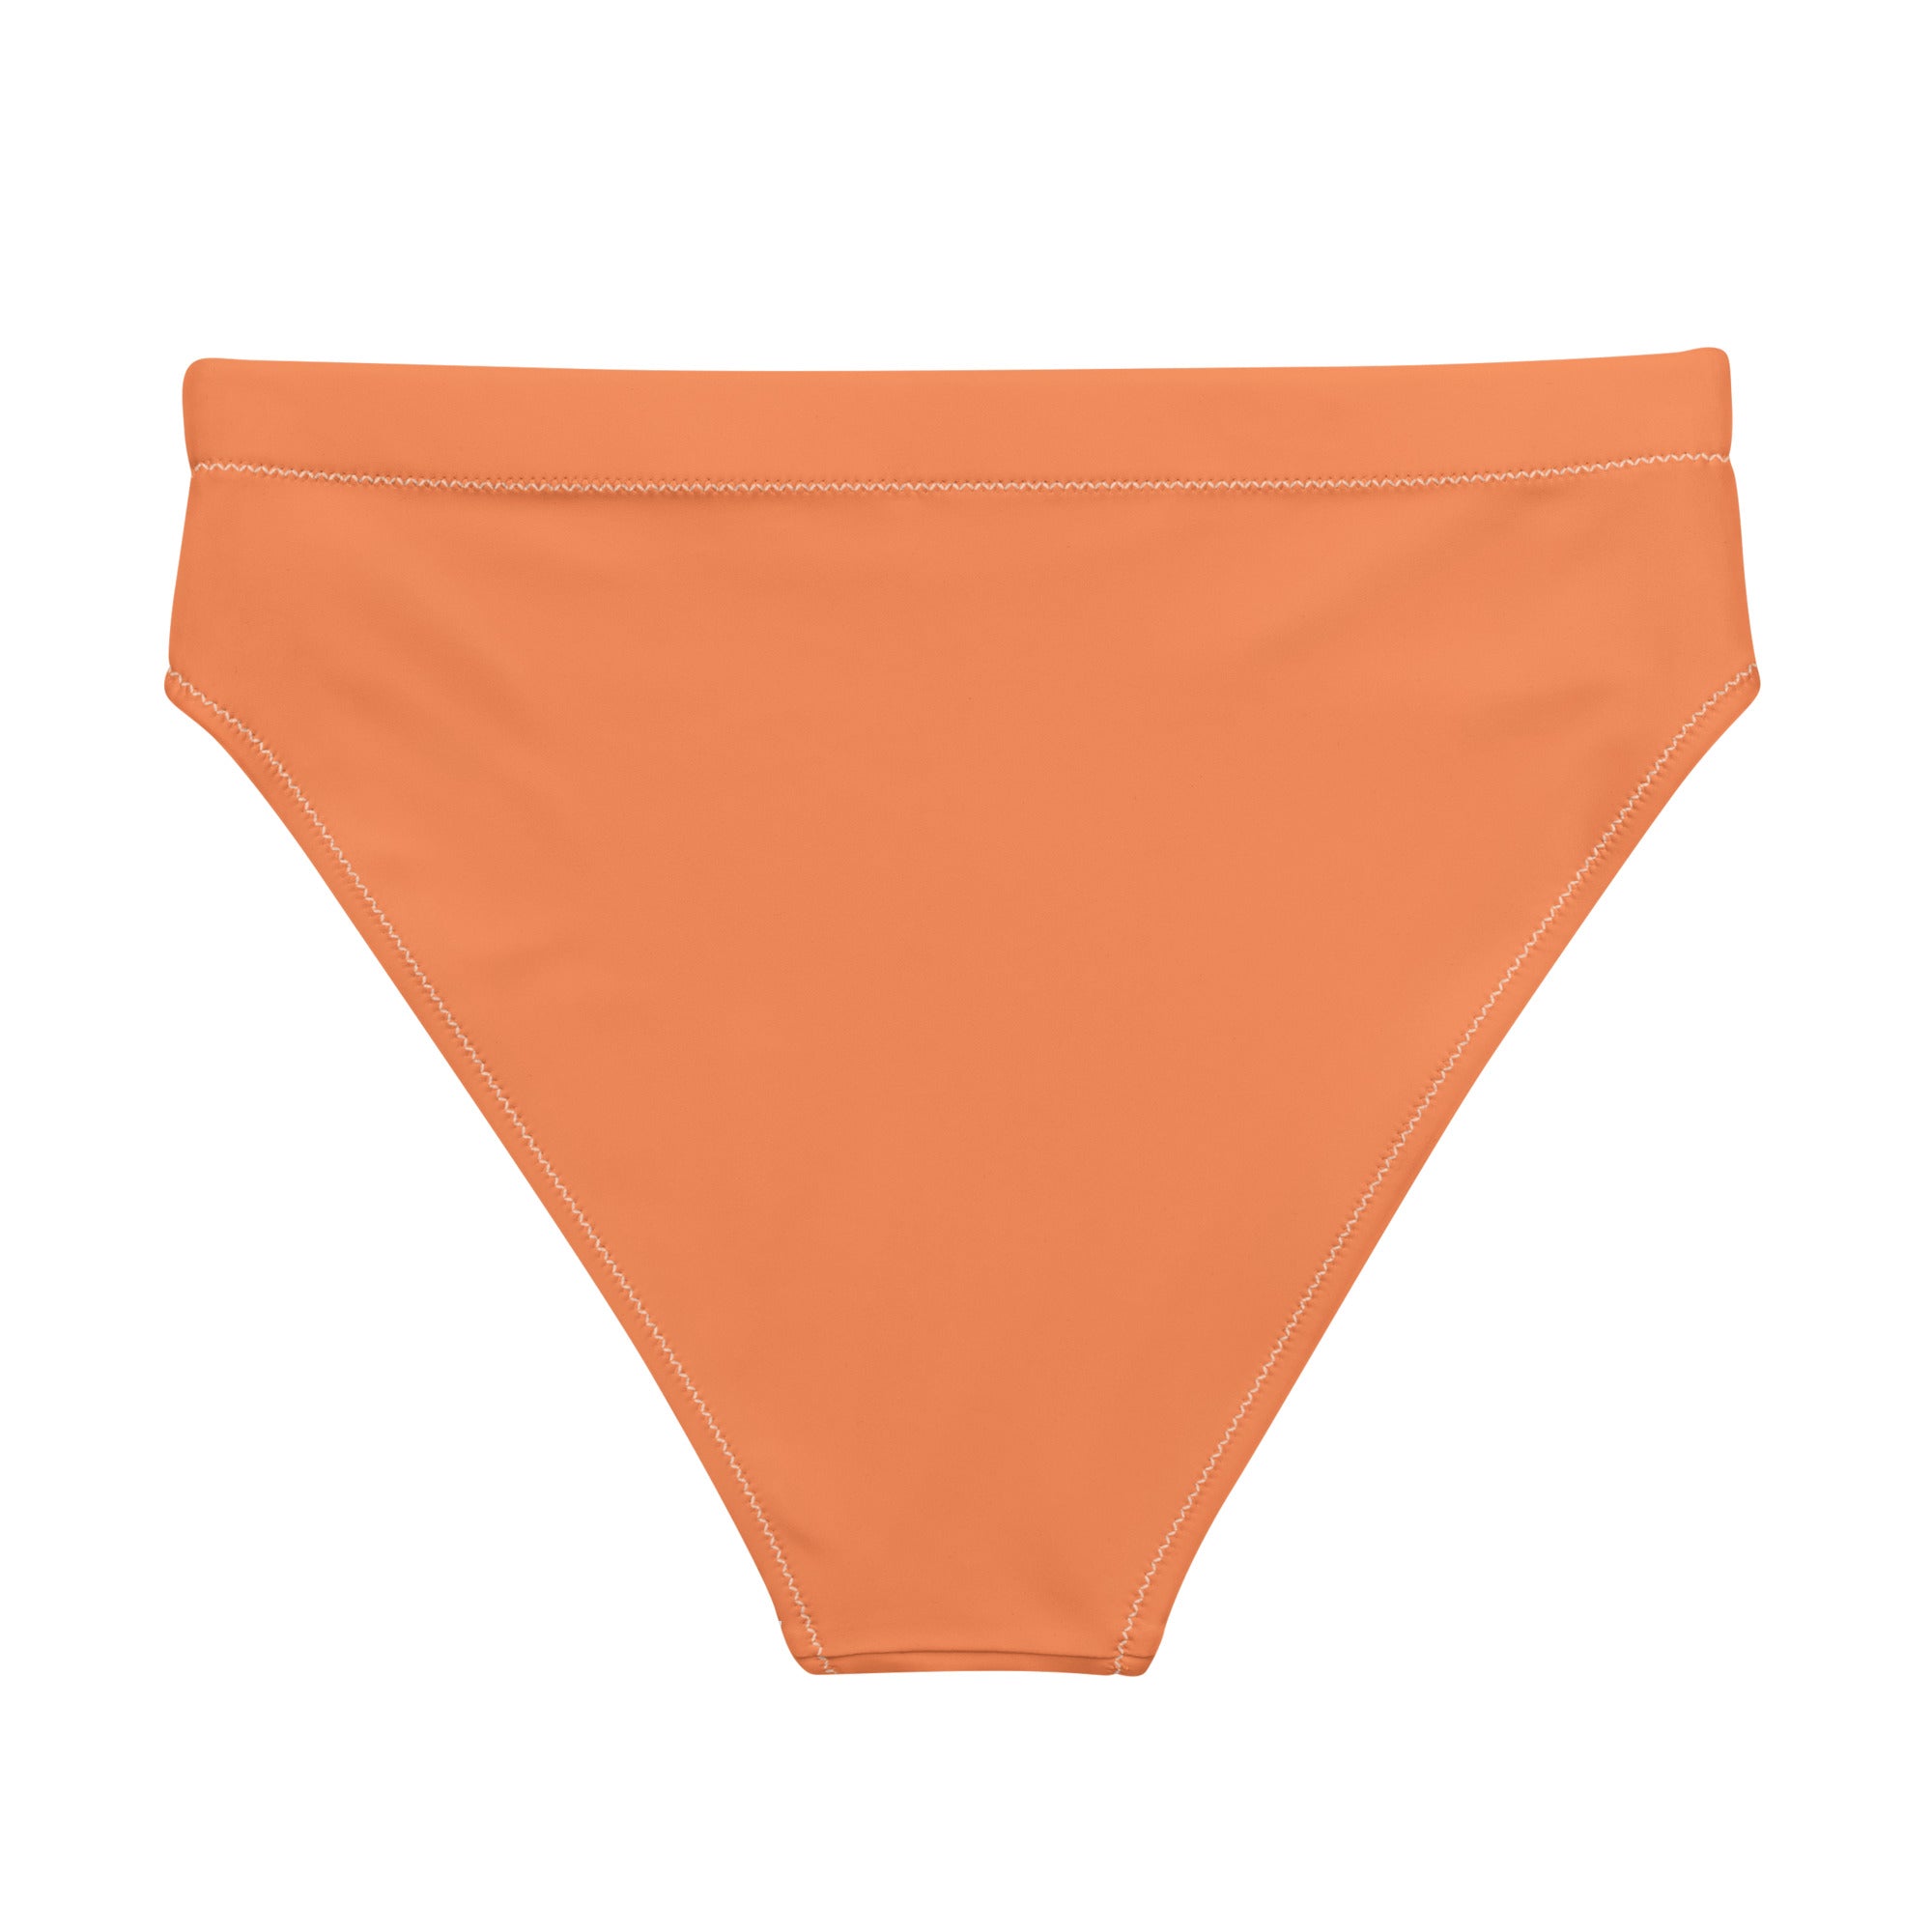 Orange bikini bottom women's swimwear